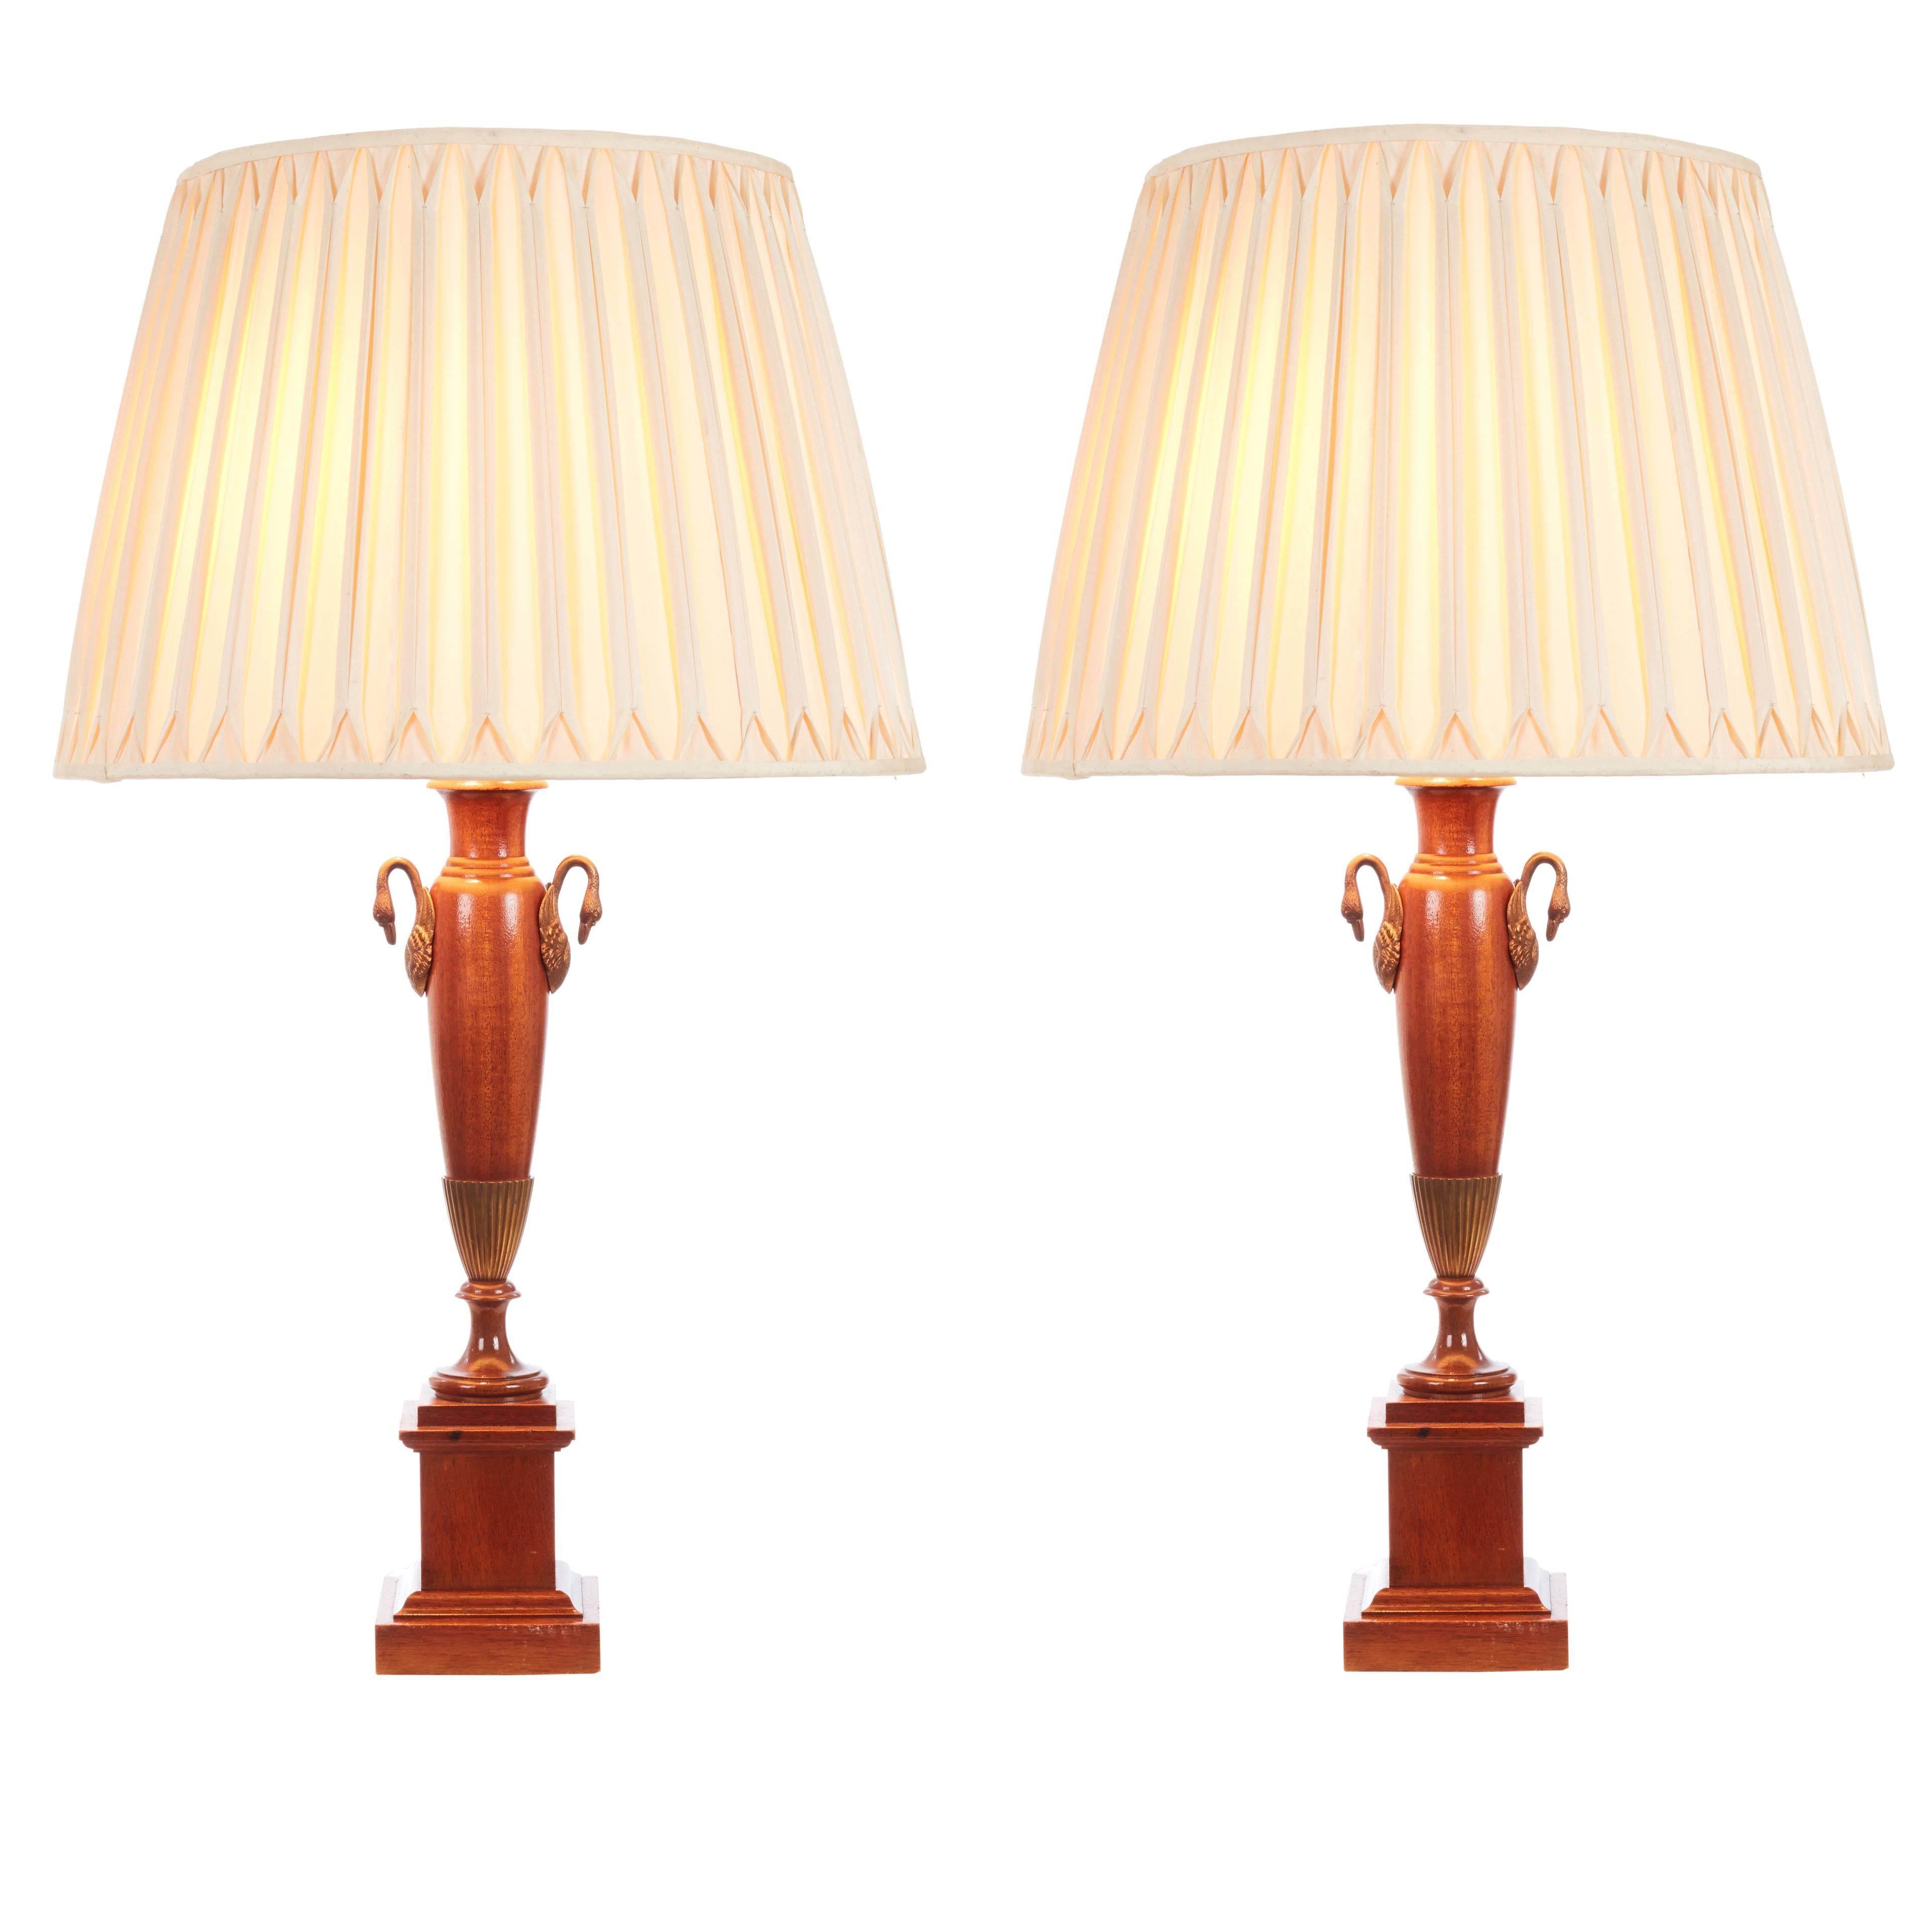 Paire de lampes de table anglaises classiques de style néo-empire grec